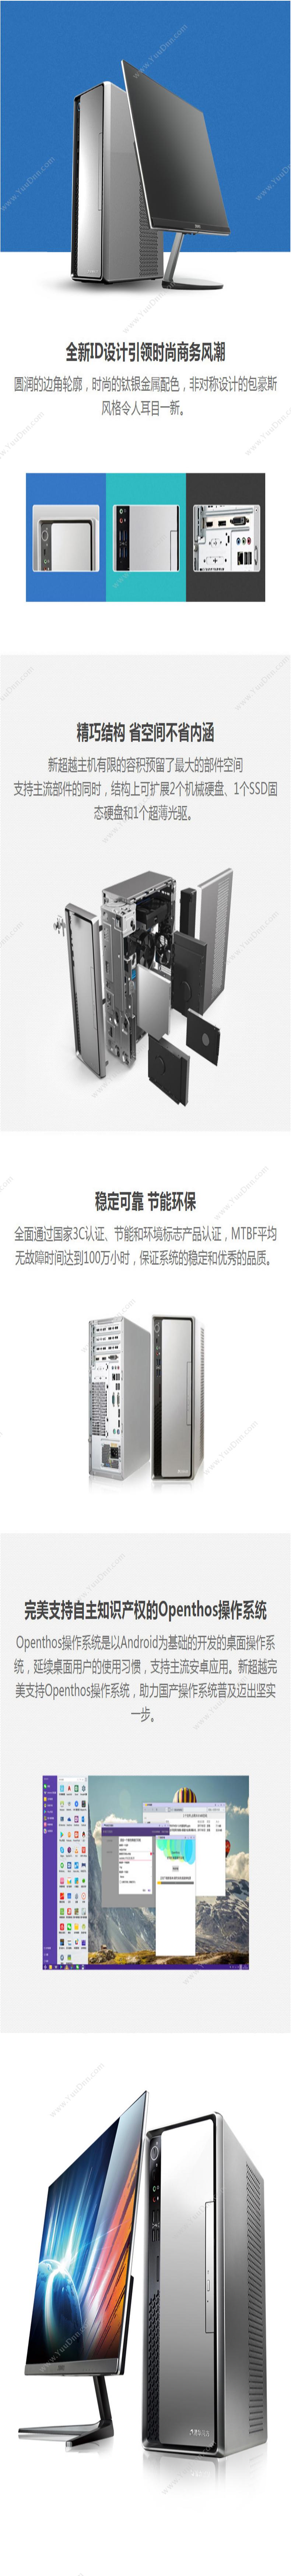 清华同方 TongFang 超扬A7500-0018(19.5寸显示器） 台式机 台式电脑套机